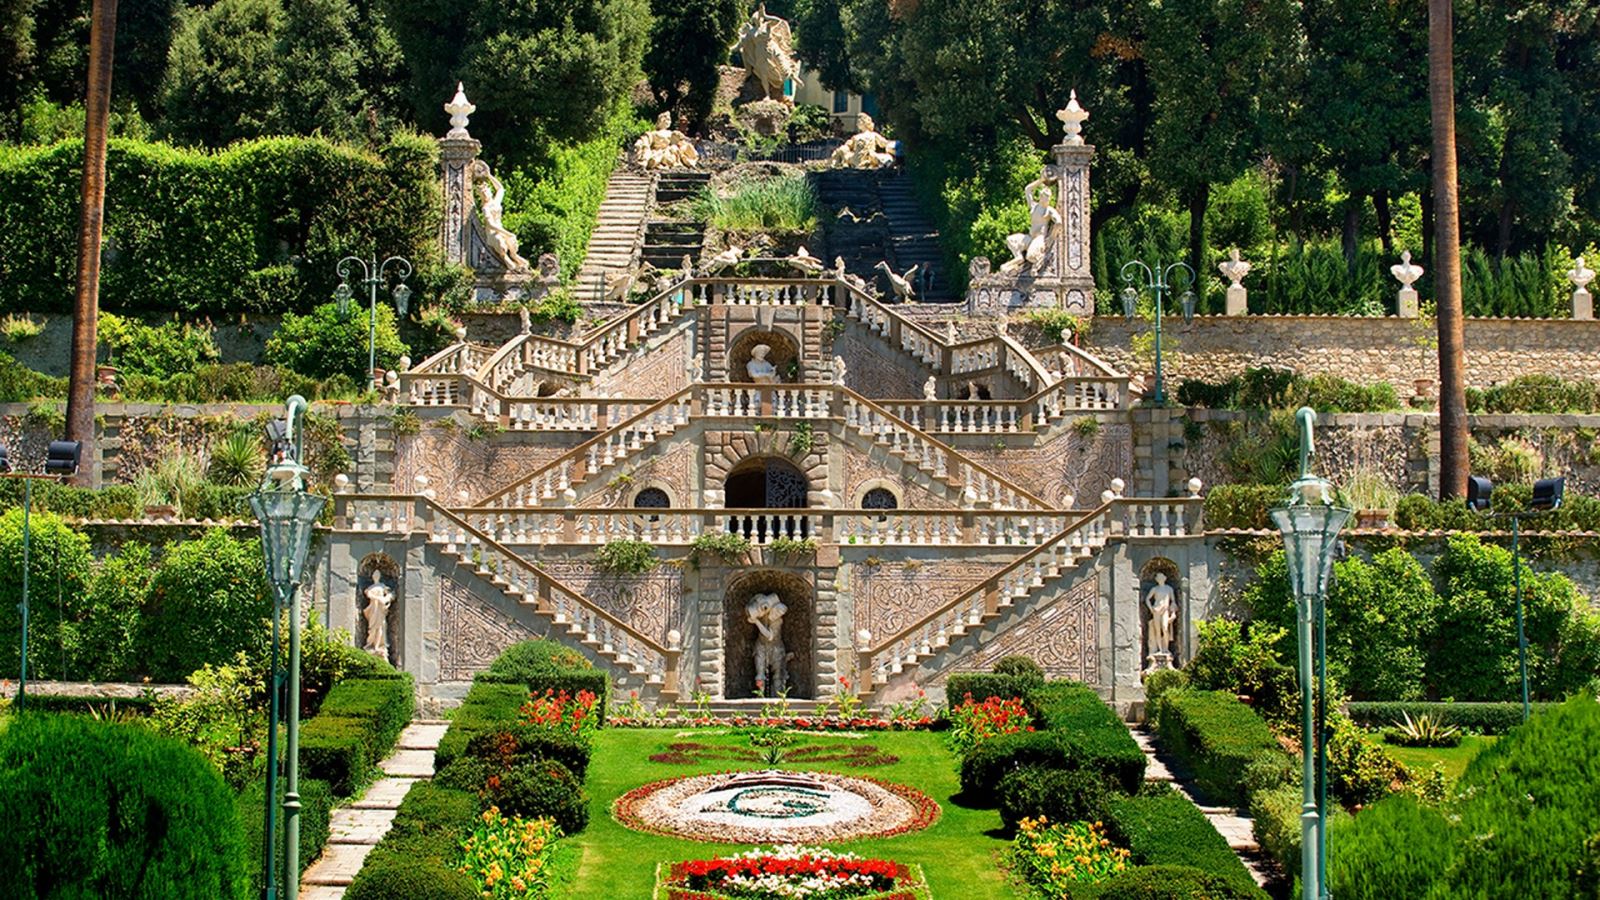 Garden of Villa Garzoni, Collodi